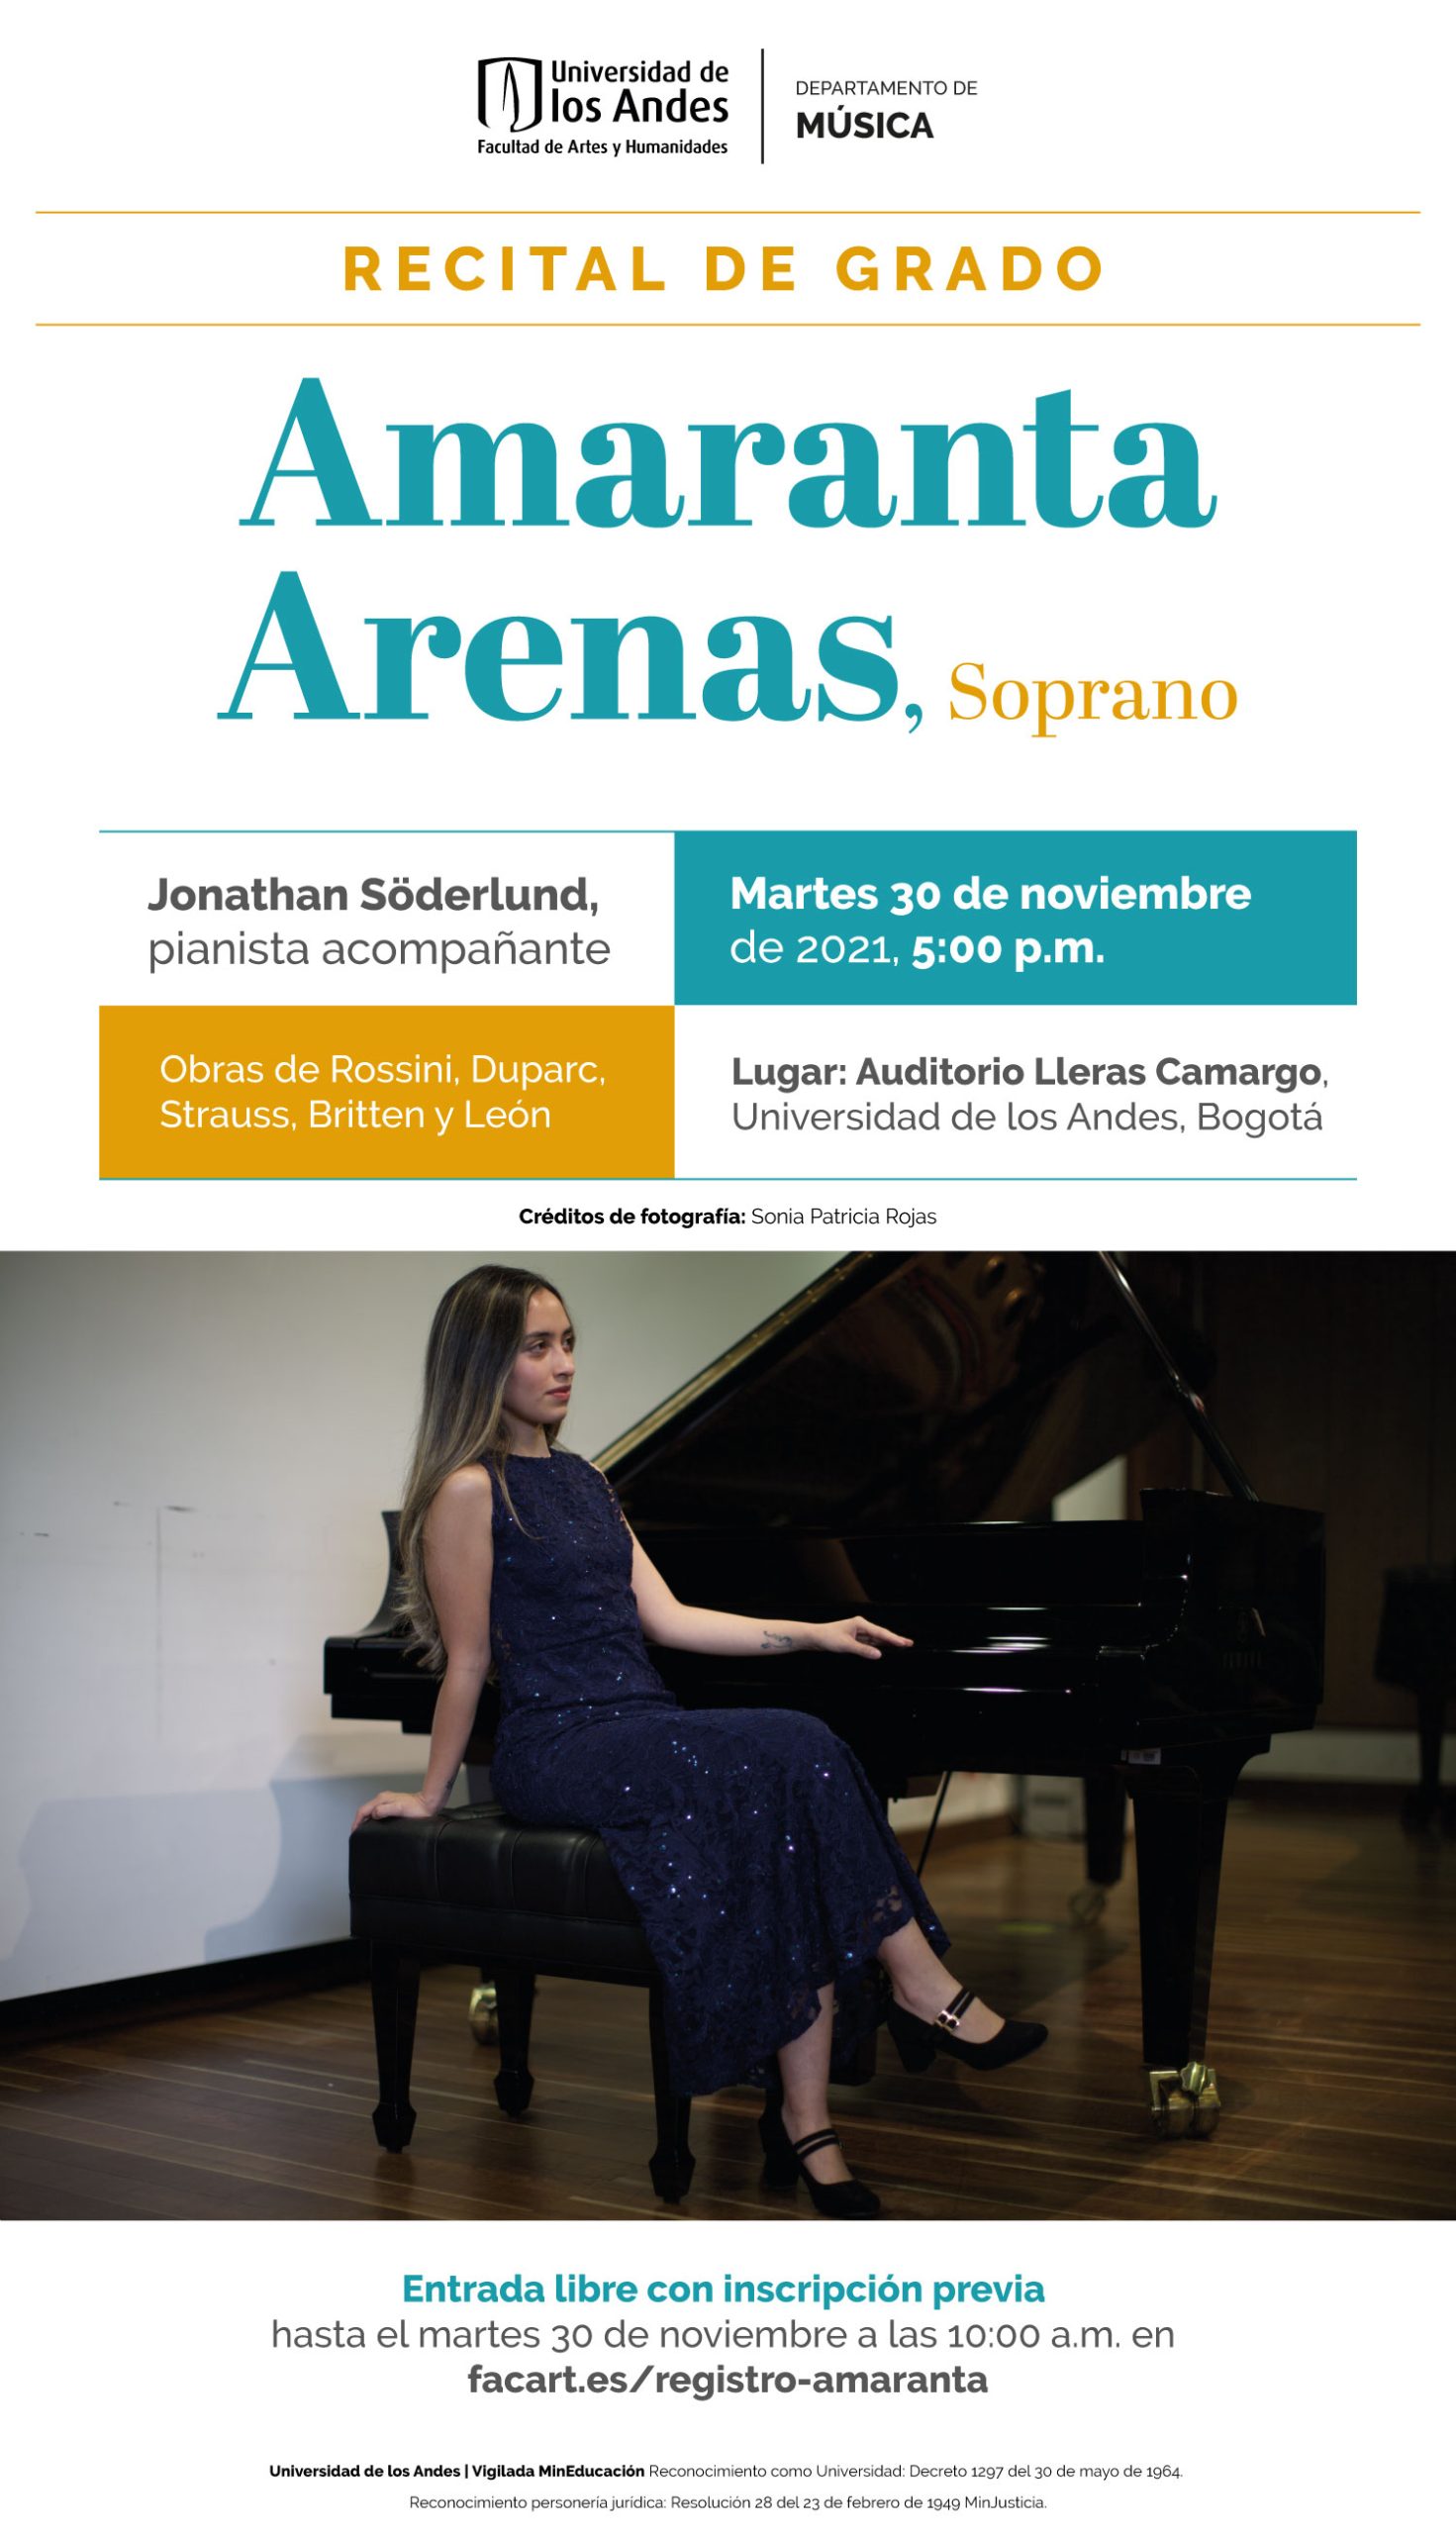 Recital de grado: Amaranta Arenas, soprano